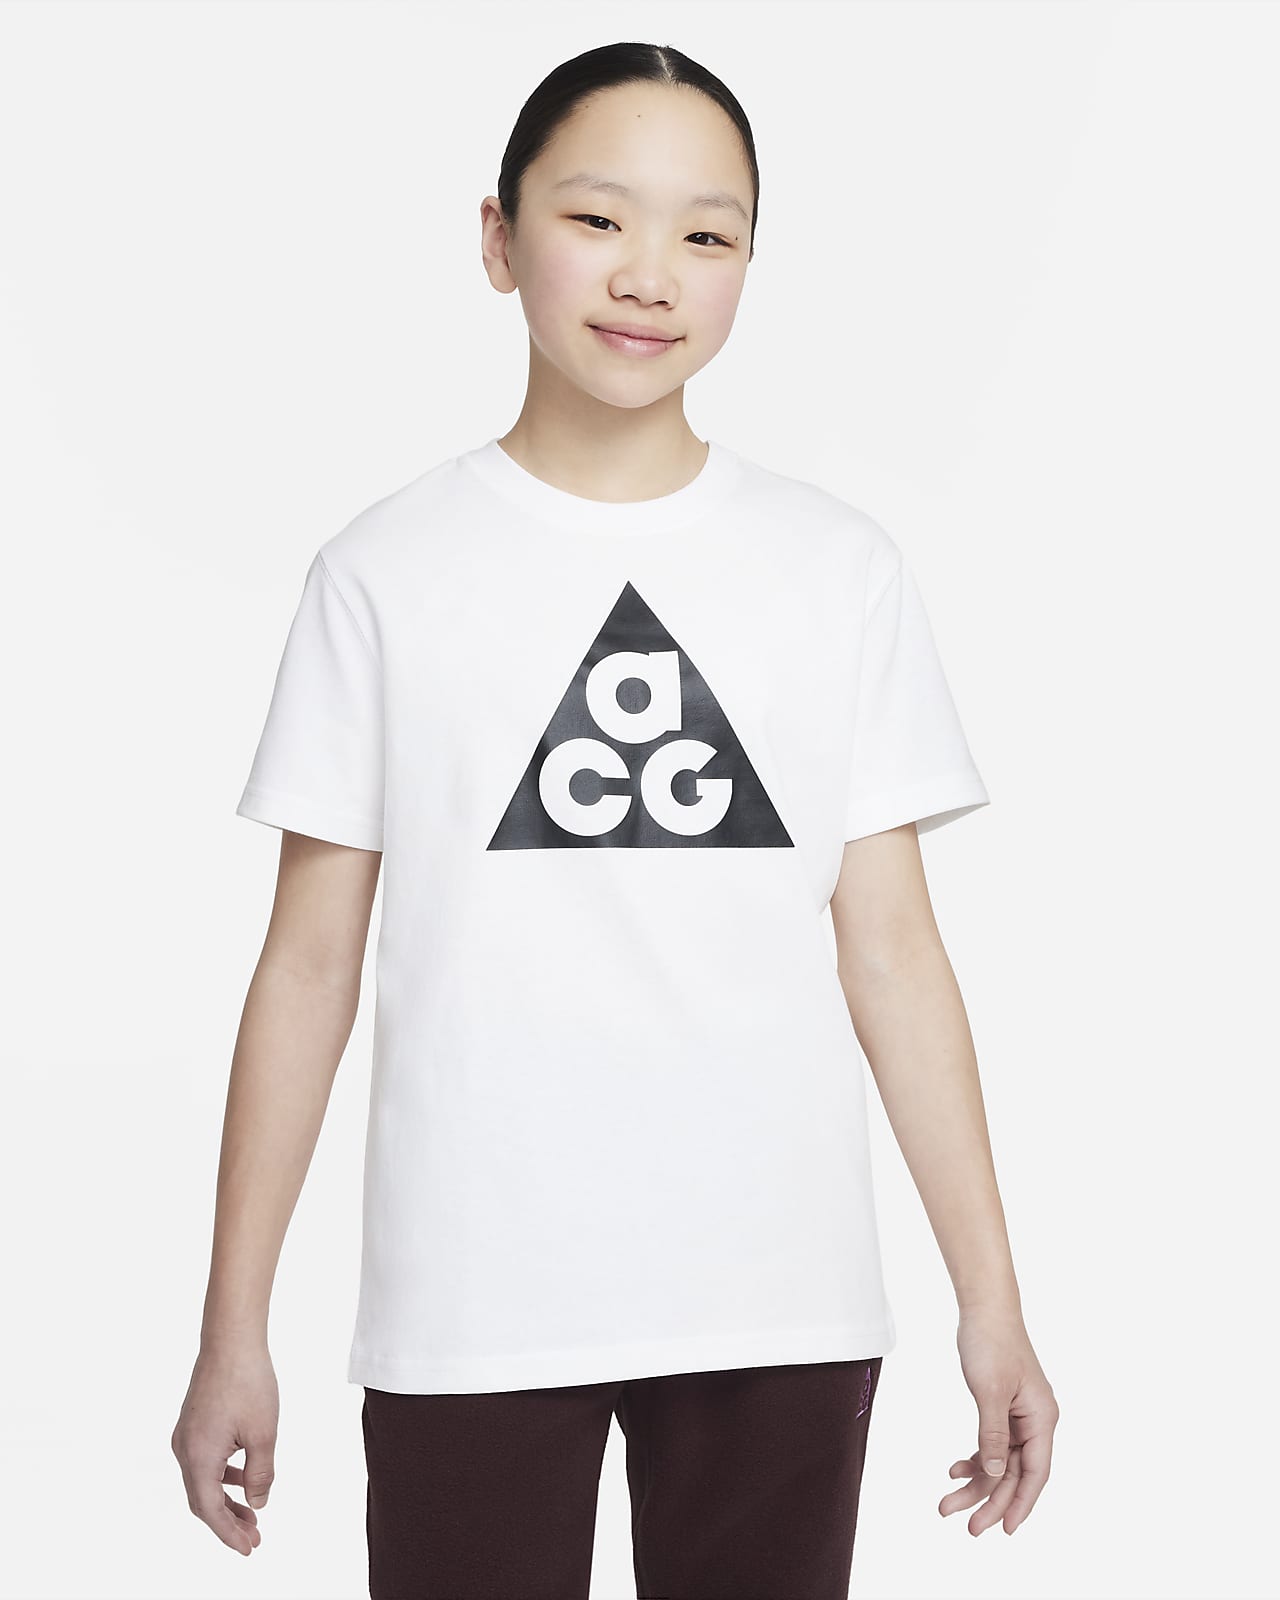 T-shirt dla dużych dzieci Nike ACG